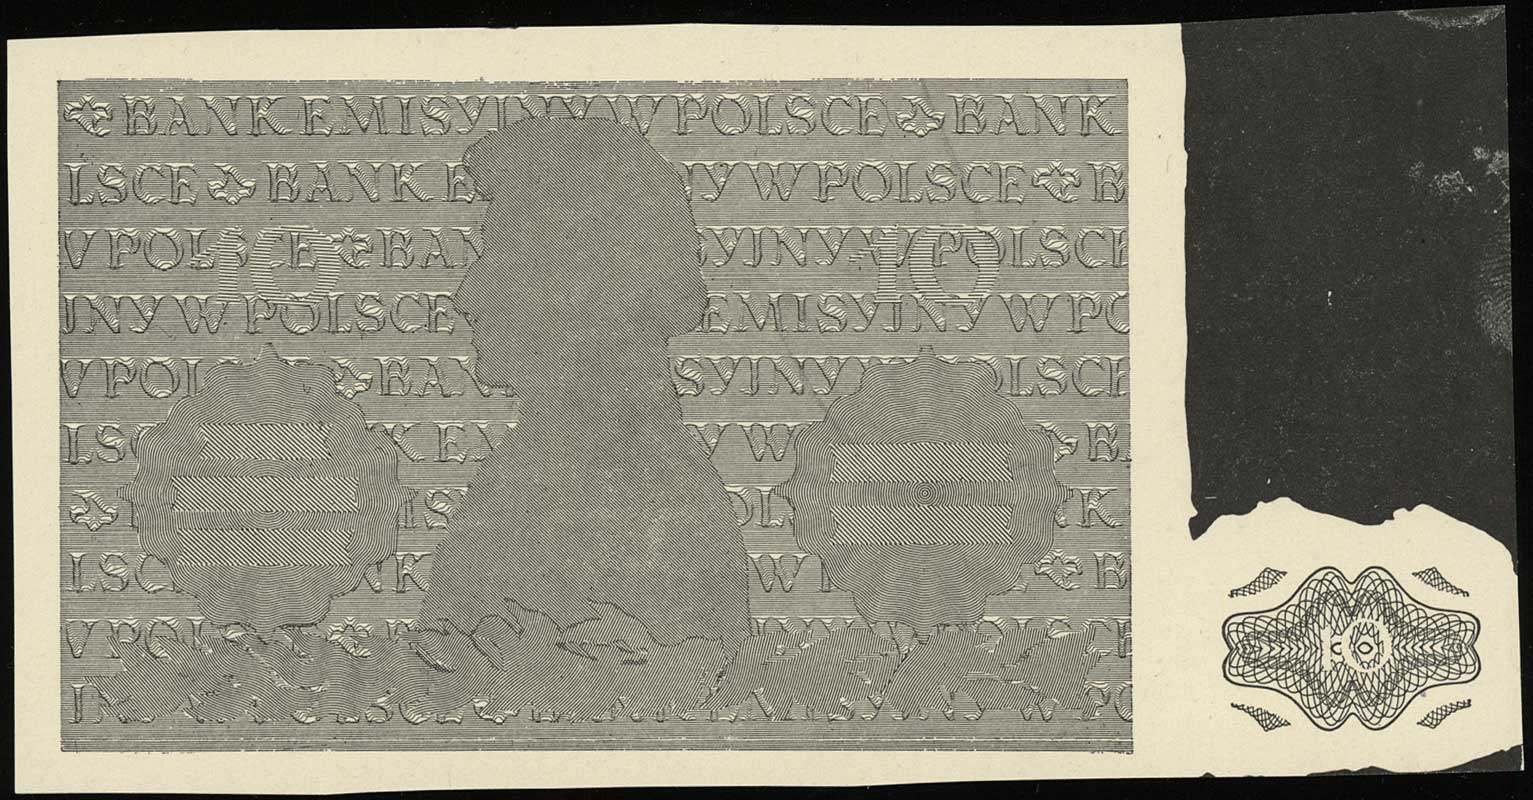 czarno-białe odbitki strony odwrotnej do projektowanego i niewprowadzonego do obiegu banknotu 10 złotych 1.08.1941, część giloszowa i główny rysunek na osobnych arkuszach, dodatkowo odbitka (miedziorytnicza?) popiersia Fryderyka Chopina wykorzystana w tym projekcie, razem 3 sztuki, bardzo rzadkie